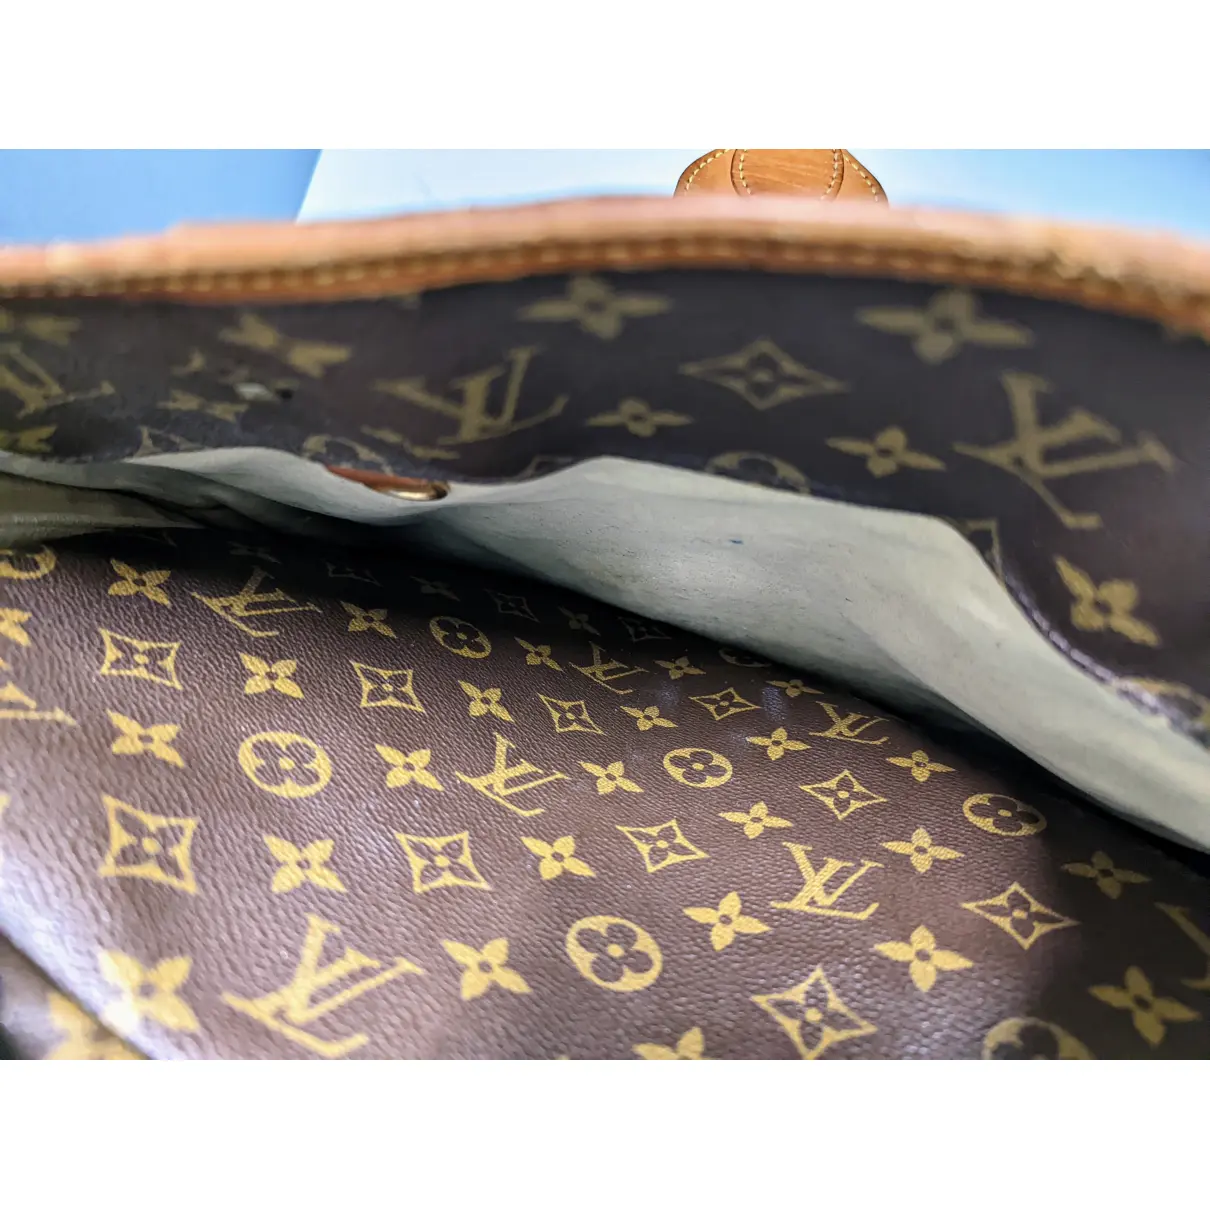 Rivoli leather handbag Louis Vuitton - Vintage